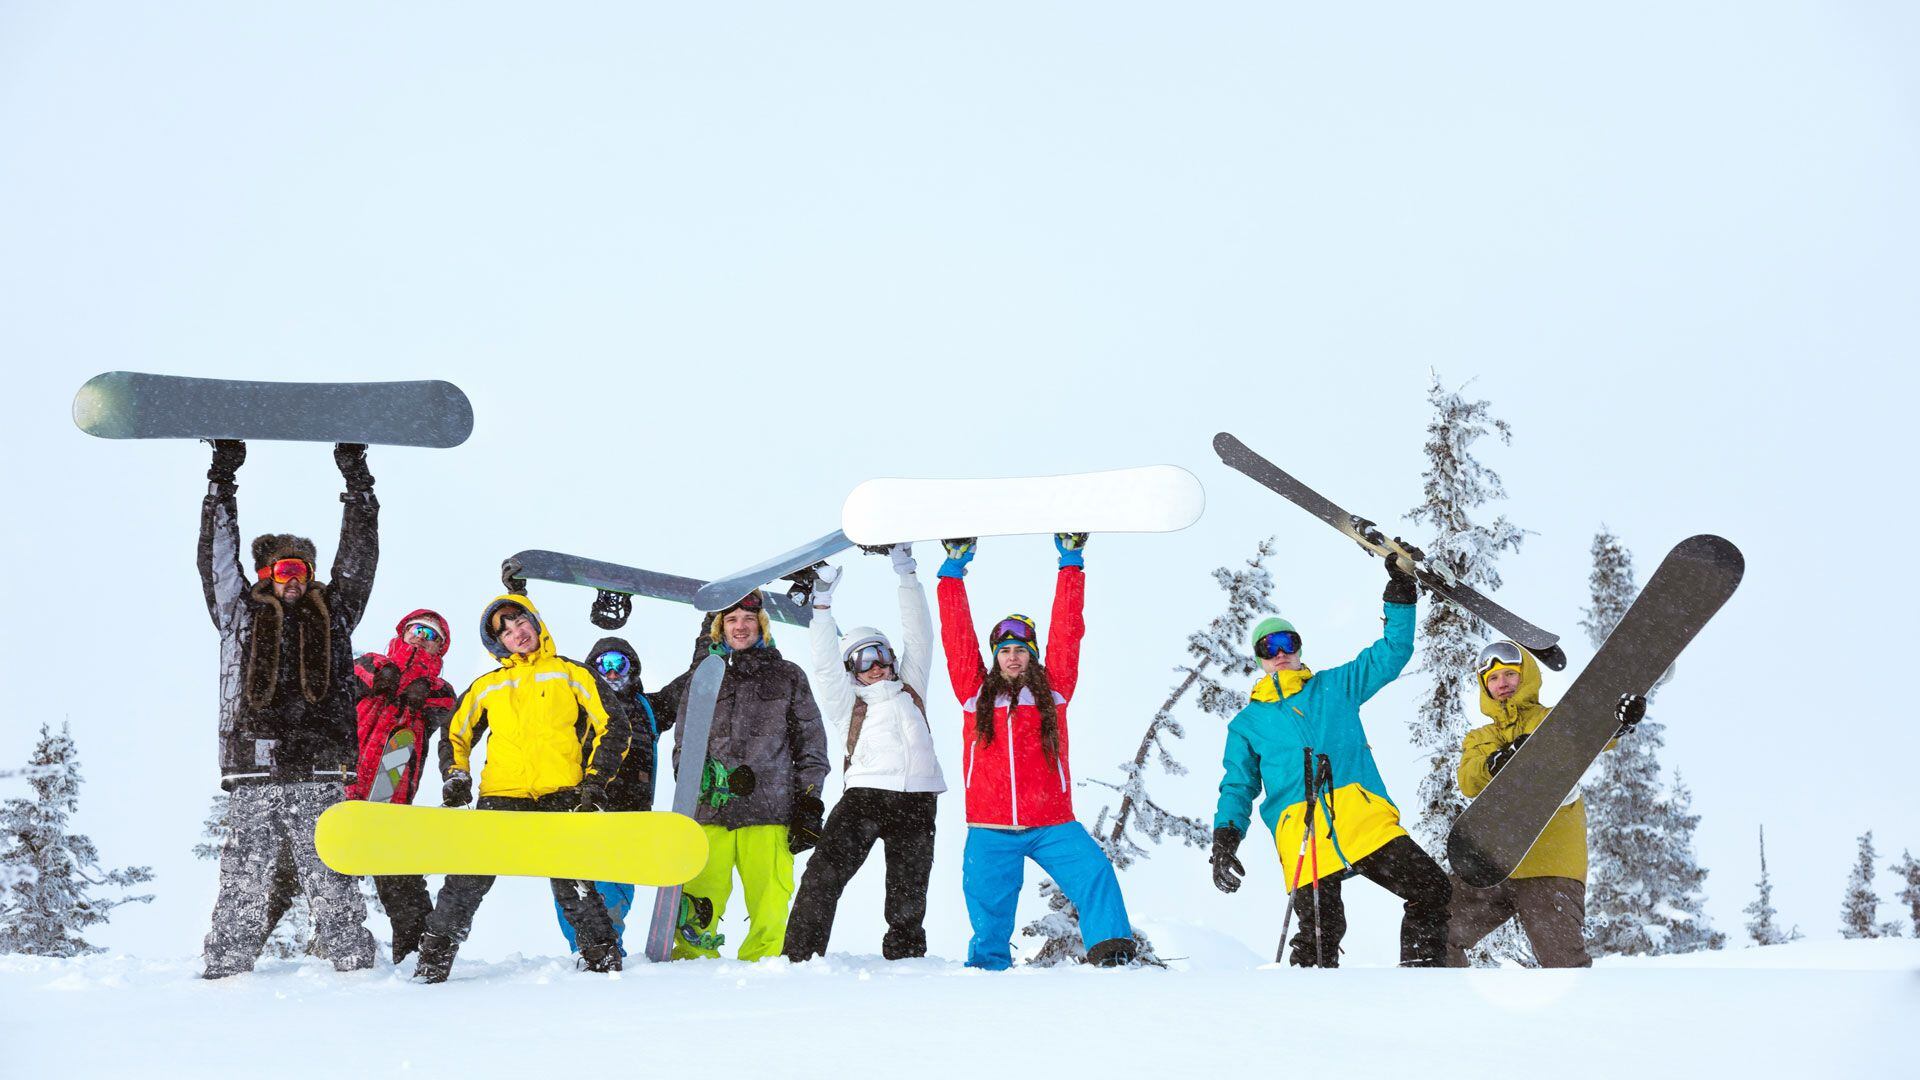 Los esquiadores profesionales, amateur y para los que recién comienzan en este deporte, encontrarán un total de 30 pistas clasificadas en principiantes, intermedios, avanzados y expertos